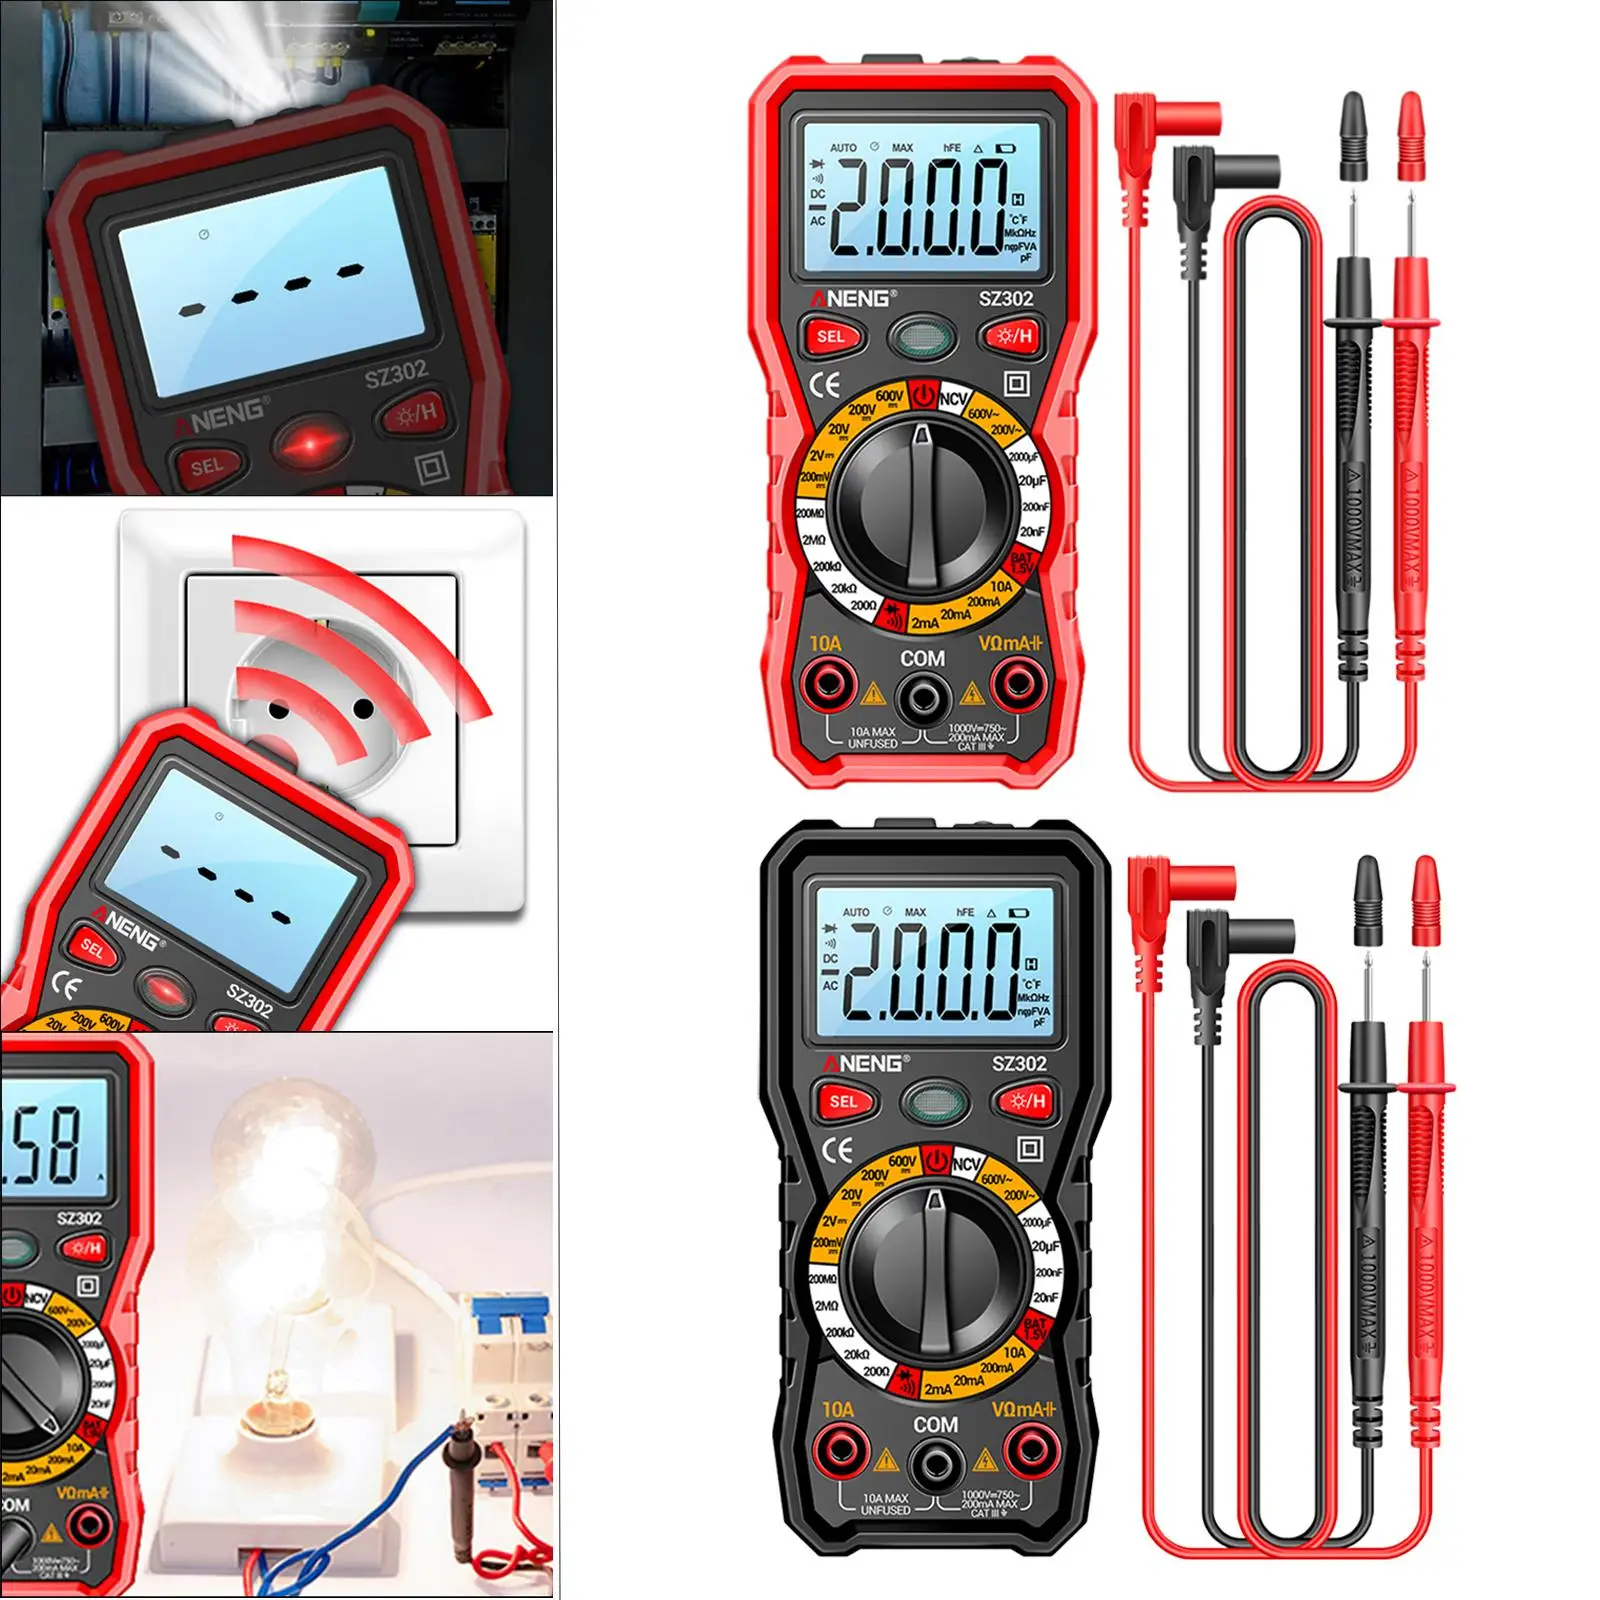 Smart Digital Meter Equipment Multifunction Ammeter for Smartphone DC Voltage Diode Test